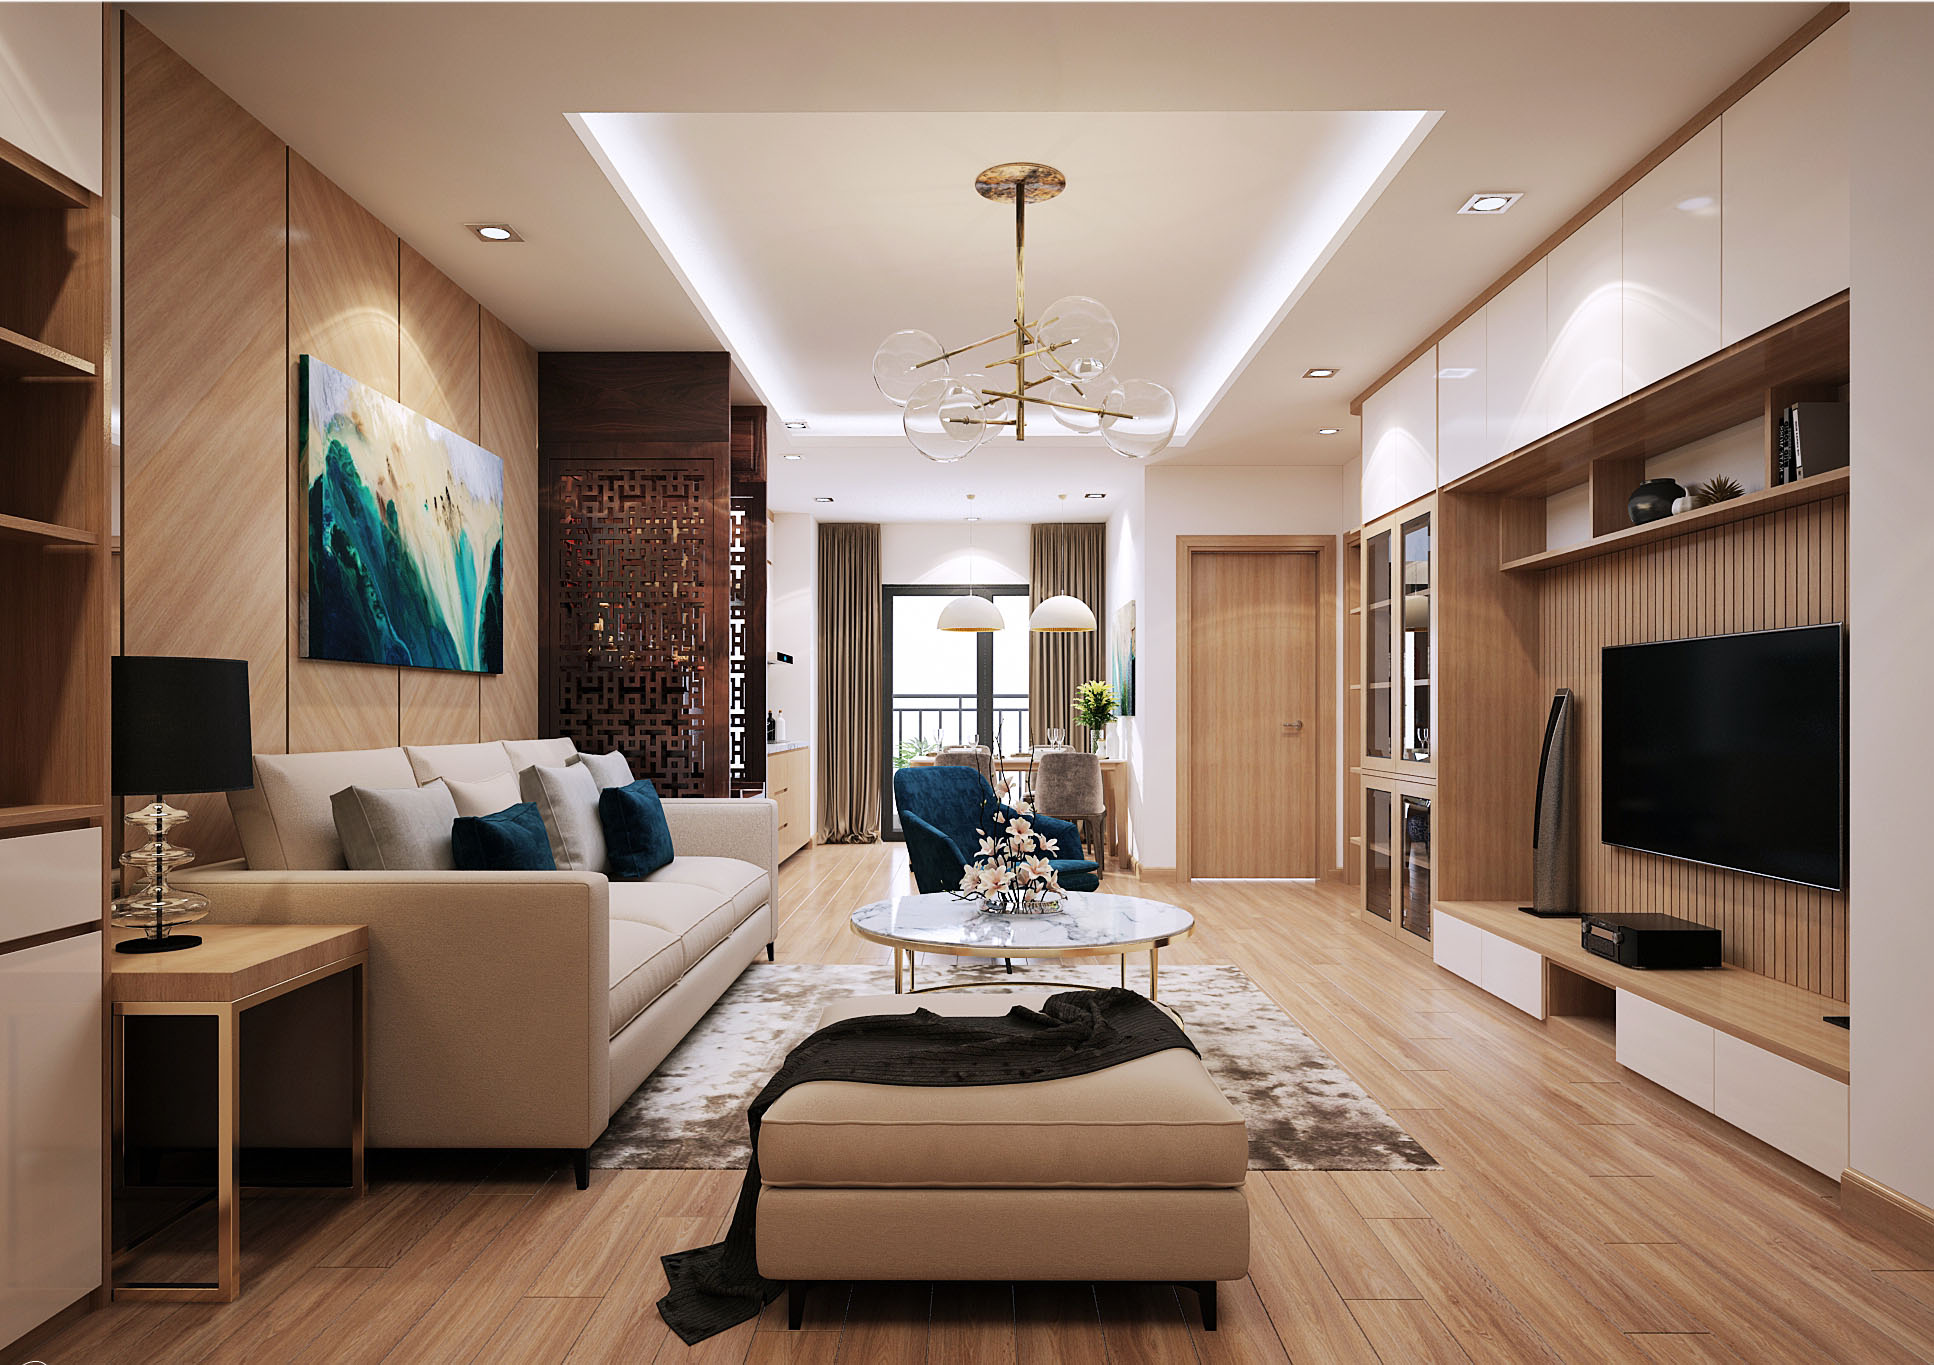 Tư vấn thiết kế nội thất nhà ở cấp 4 nhỏ xinh theo phong cách hiện đại tối giản và với chi phí tiết kiệm chỉ 50 triệu - Ảnh 5.